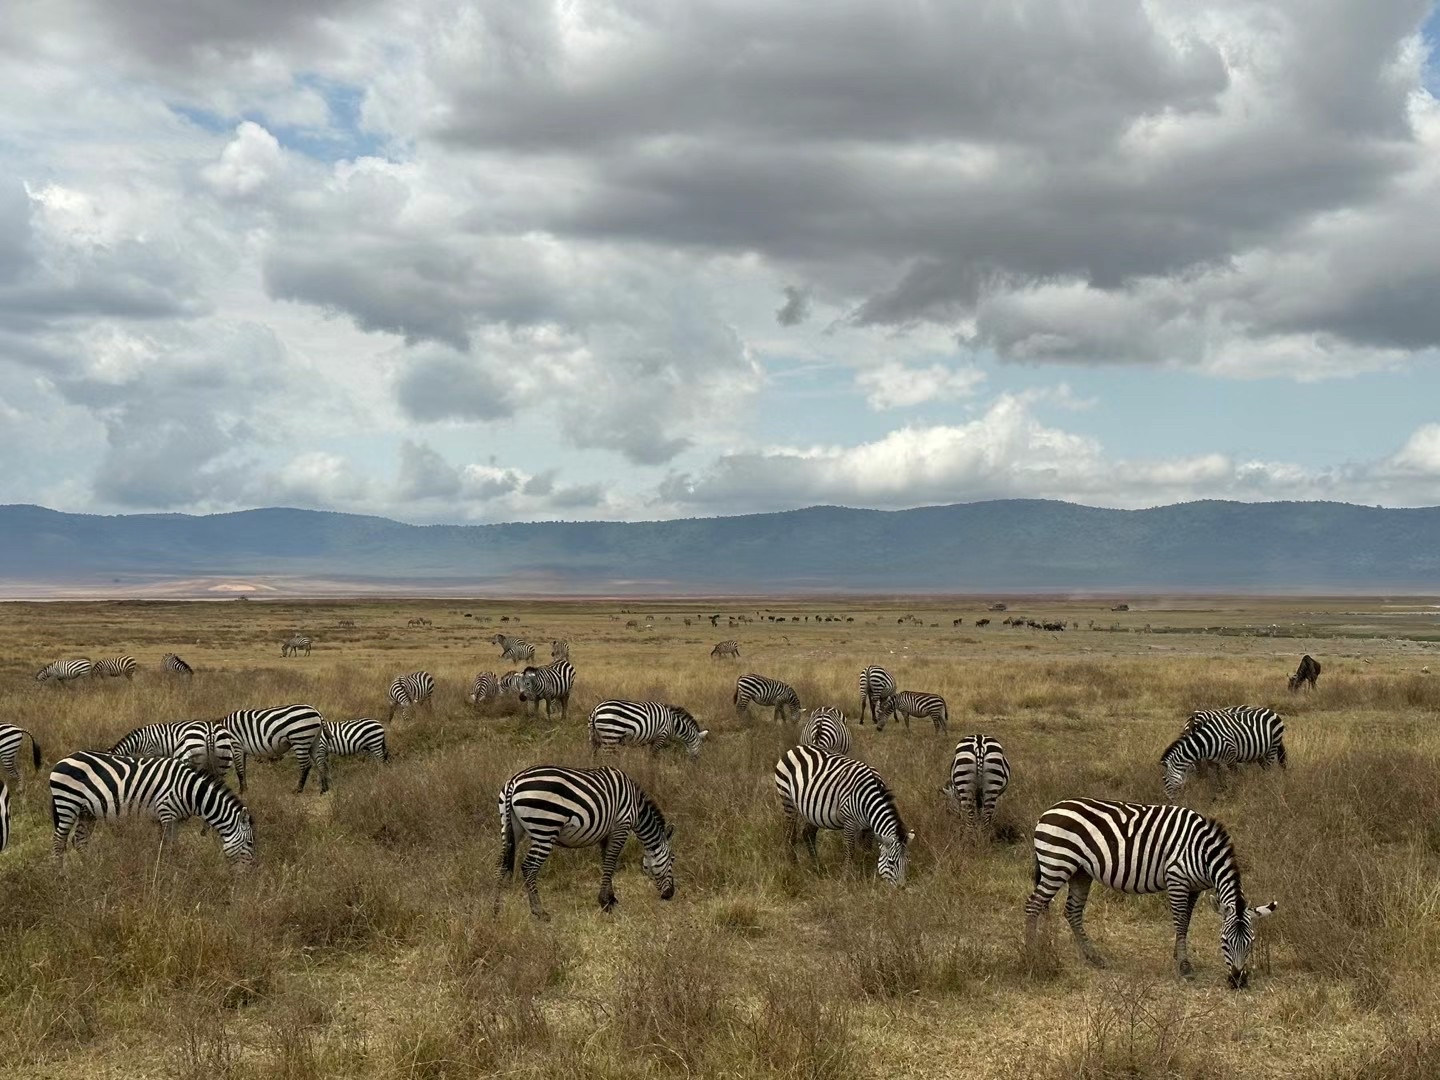 恩戈罗恩戈罗火山口 Ngorongoro Crater 位于坦桑尼亚北部东非大裂谷的死火山口。栖居着